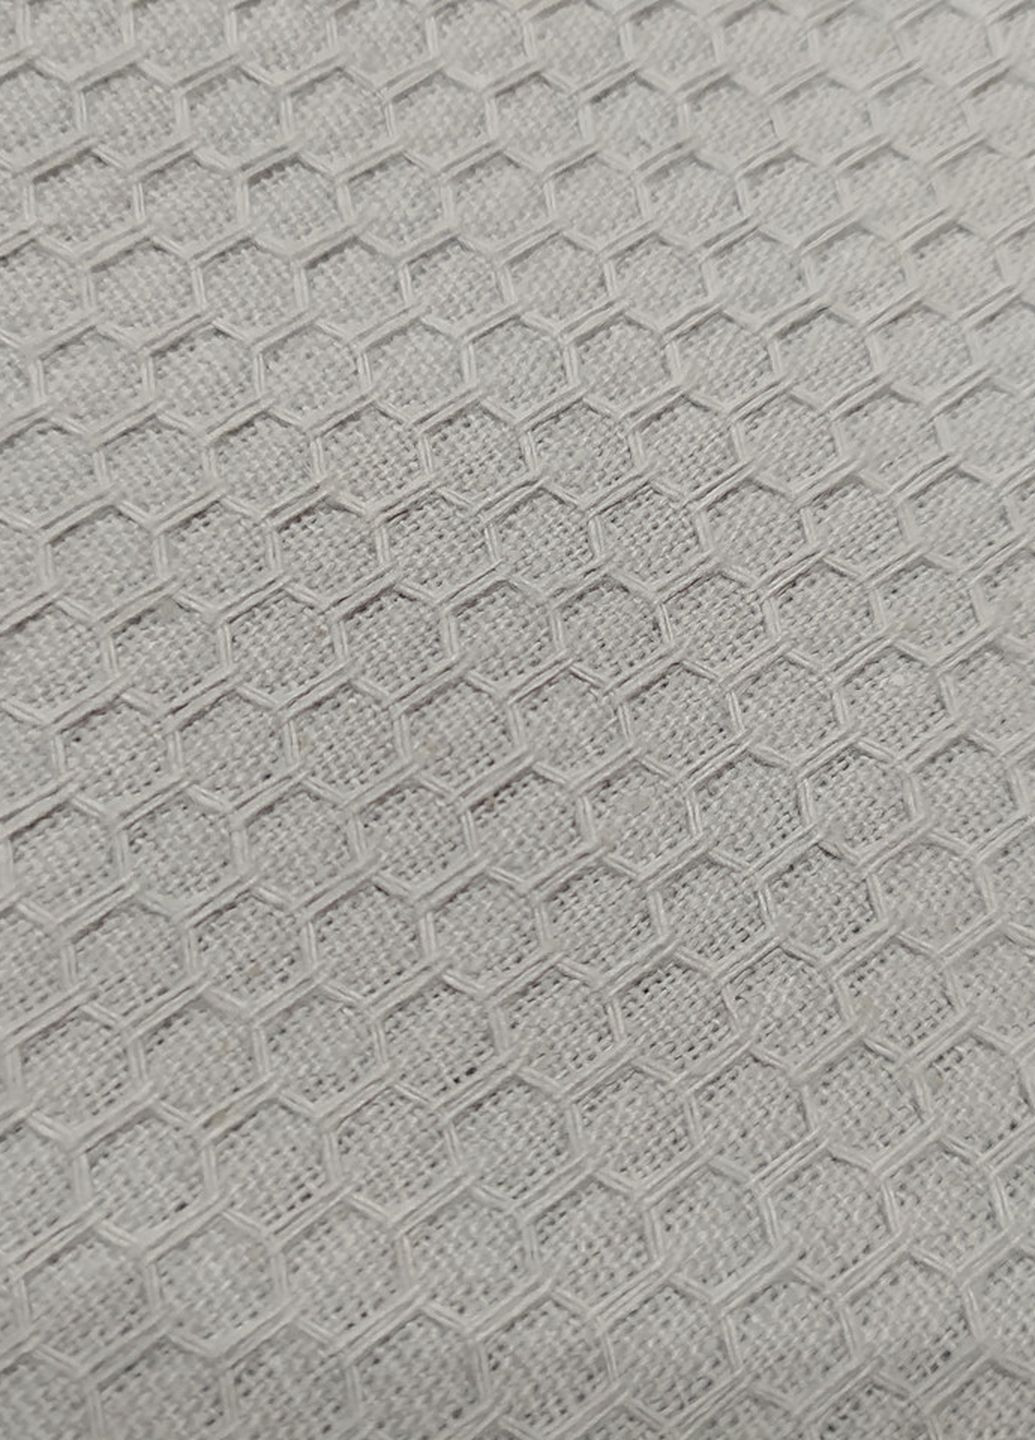 No Brand полотенце вафельное для лица 50*90 серый (03886) серый производство - Украина